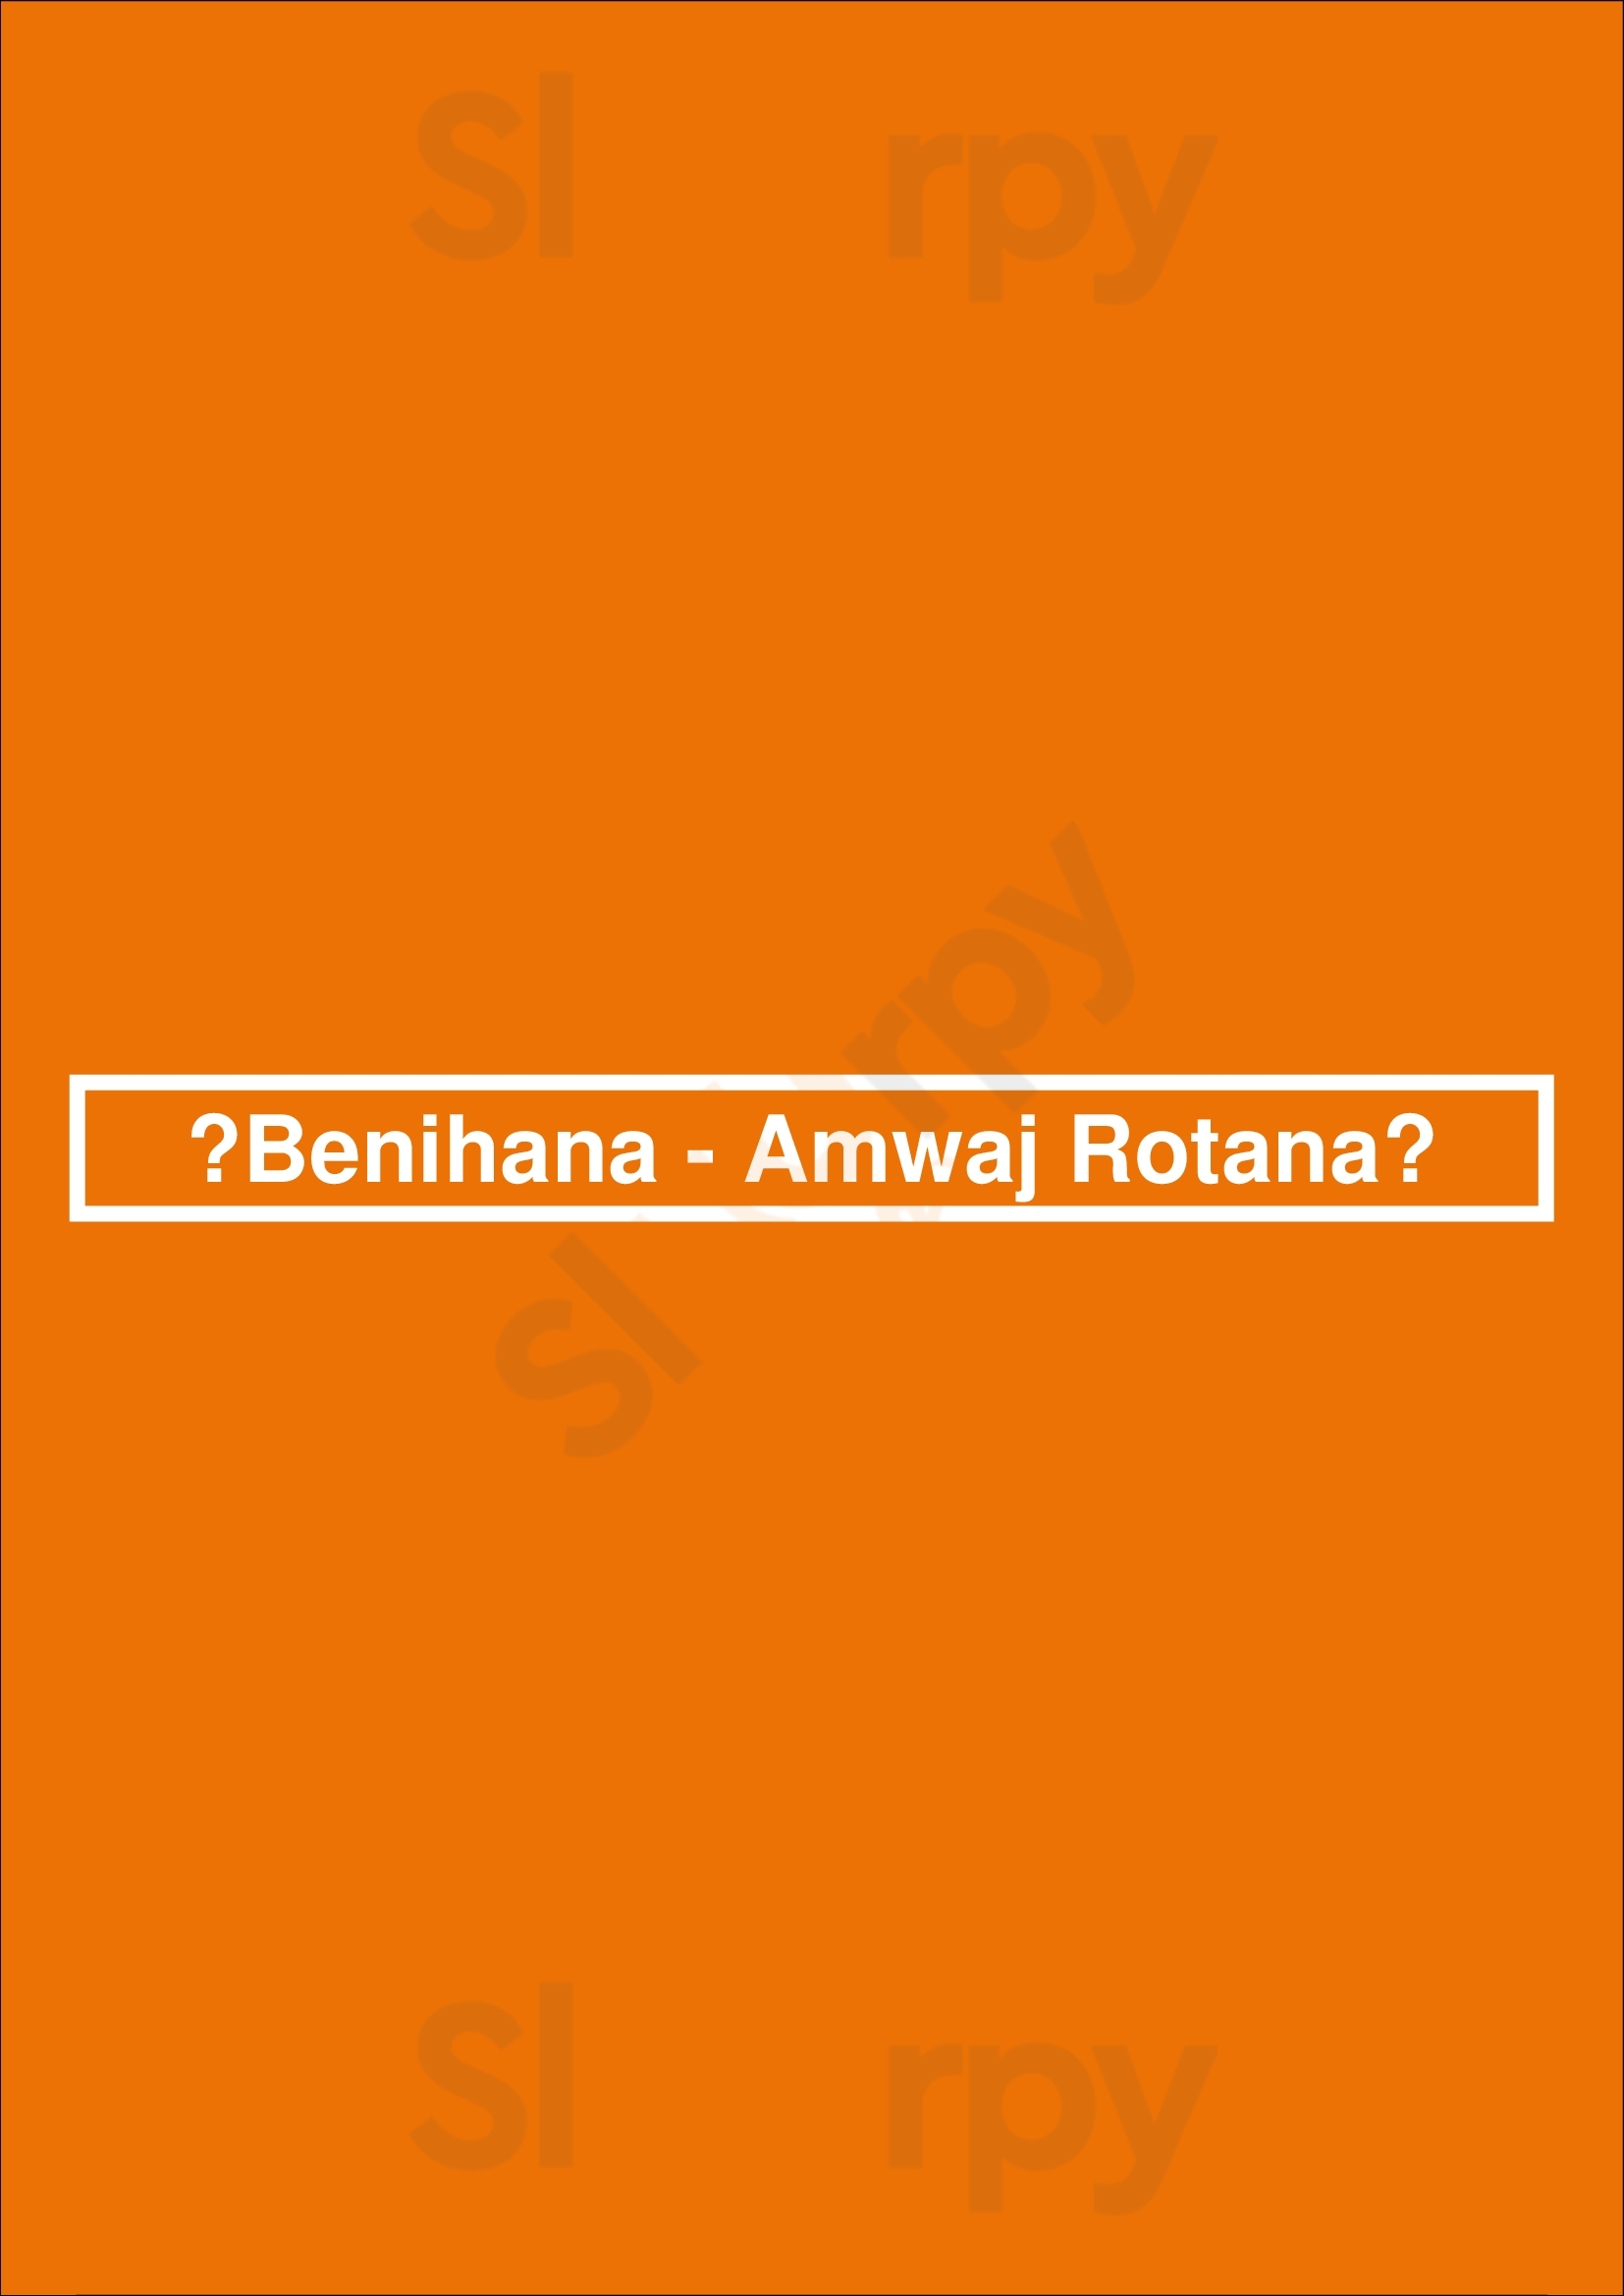 ‪benihana - Amwaj Rotana‬ دُبي Menu - 1